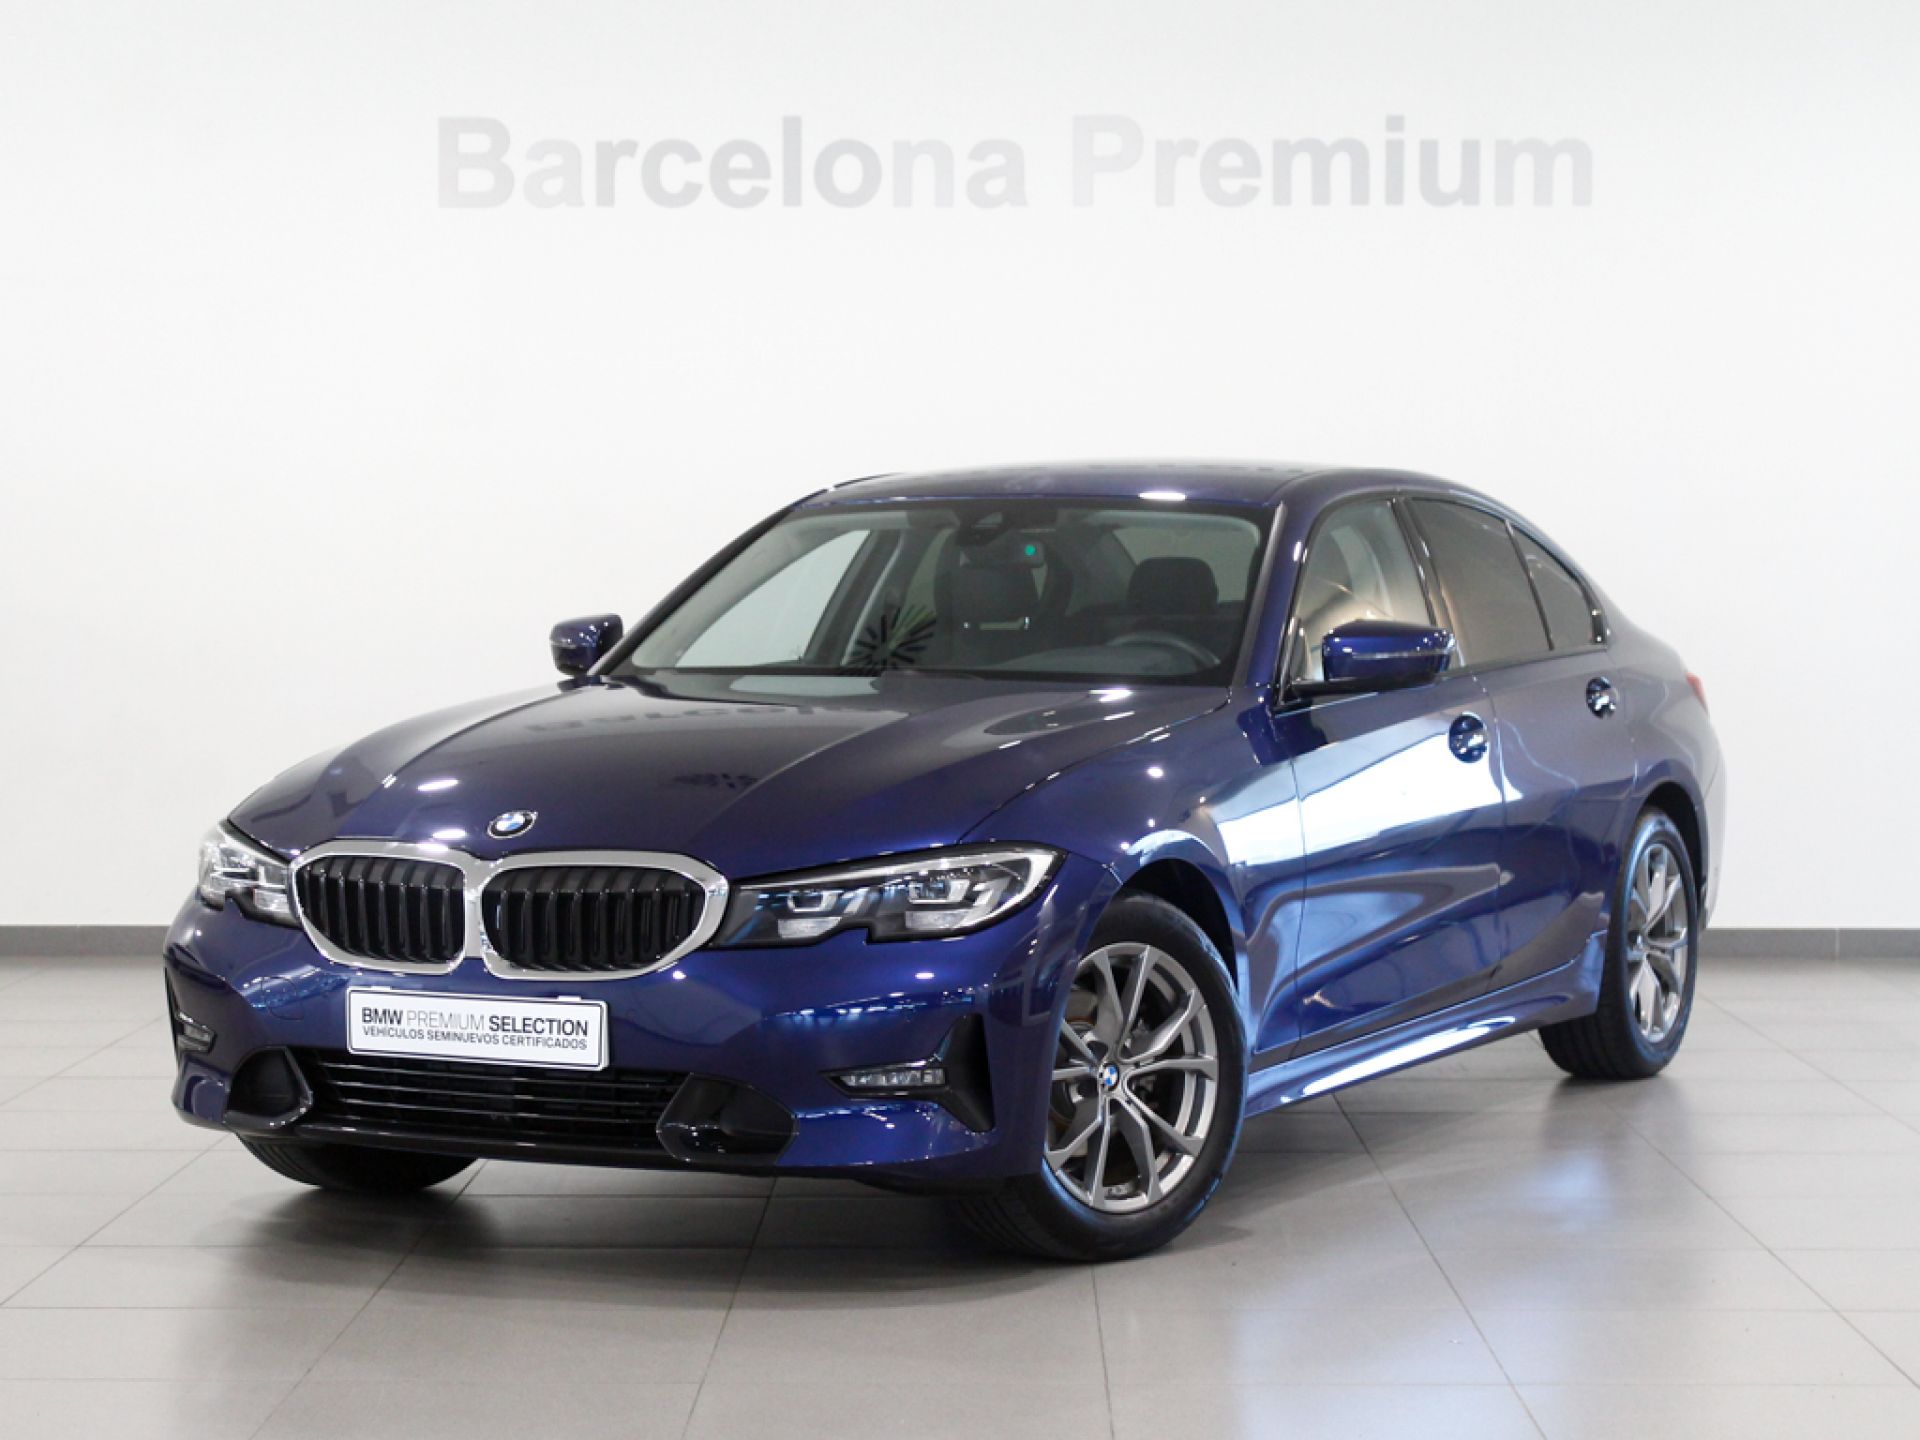 BMW Serie 3 318d 2020 9201 kms (metalizado) segunda mano Barcelona (9133) | Caetano Cuzco